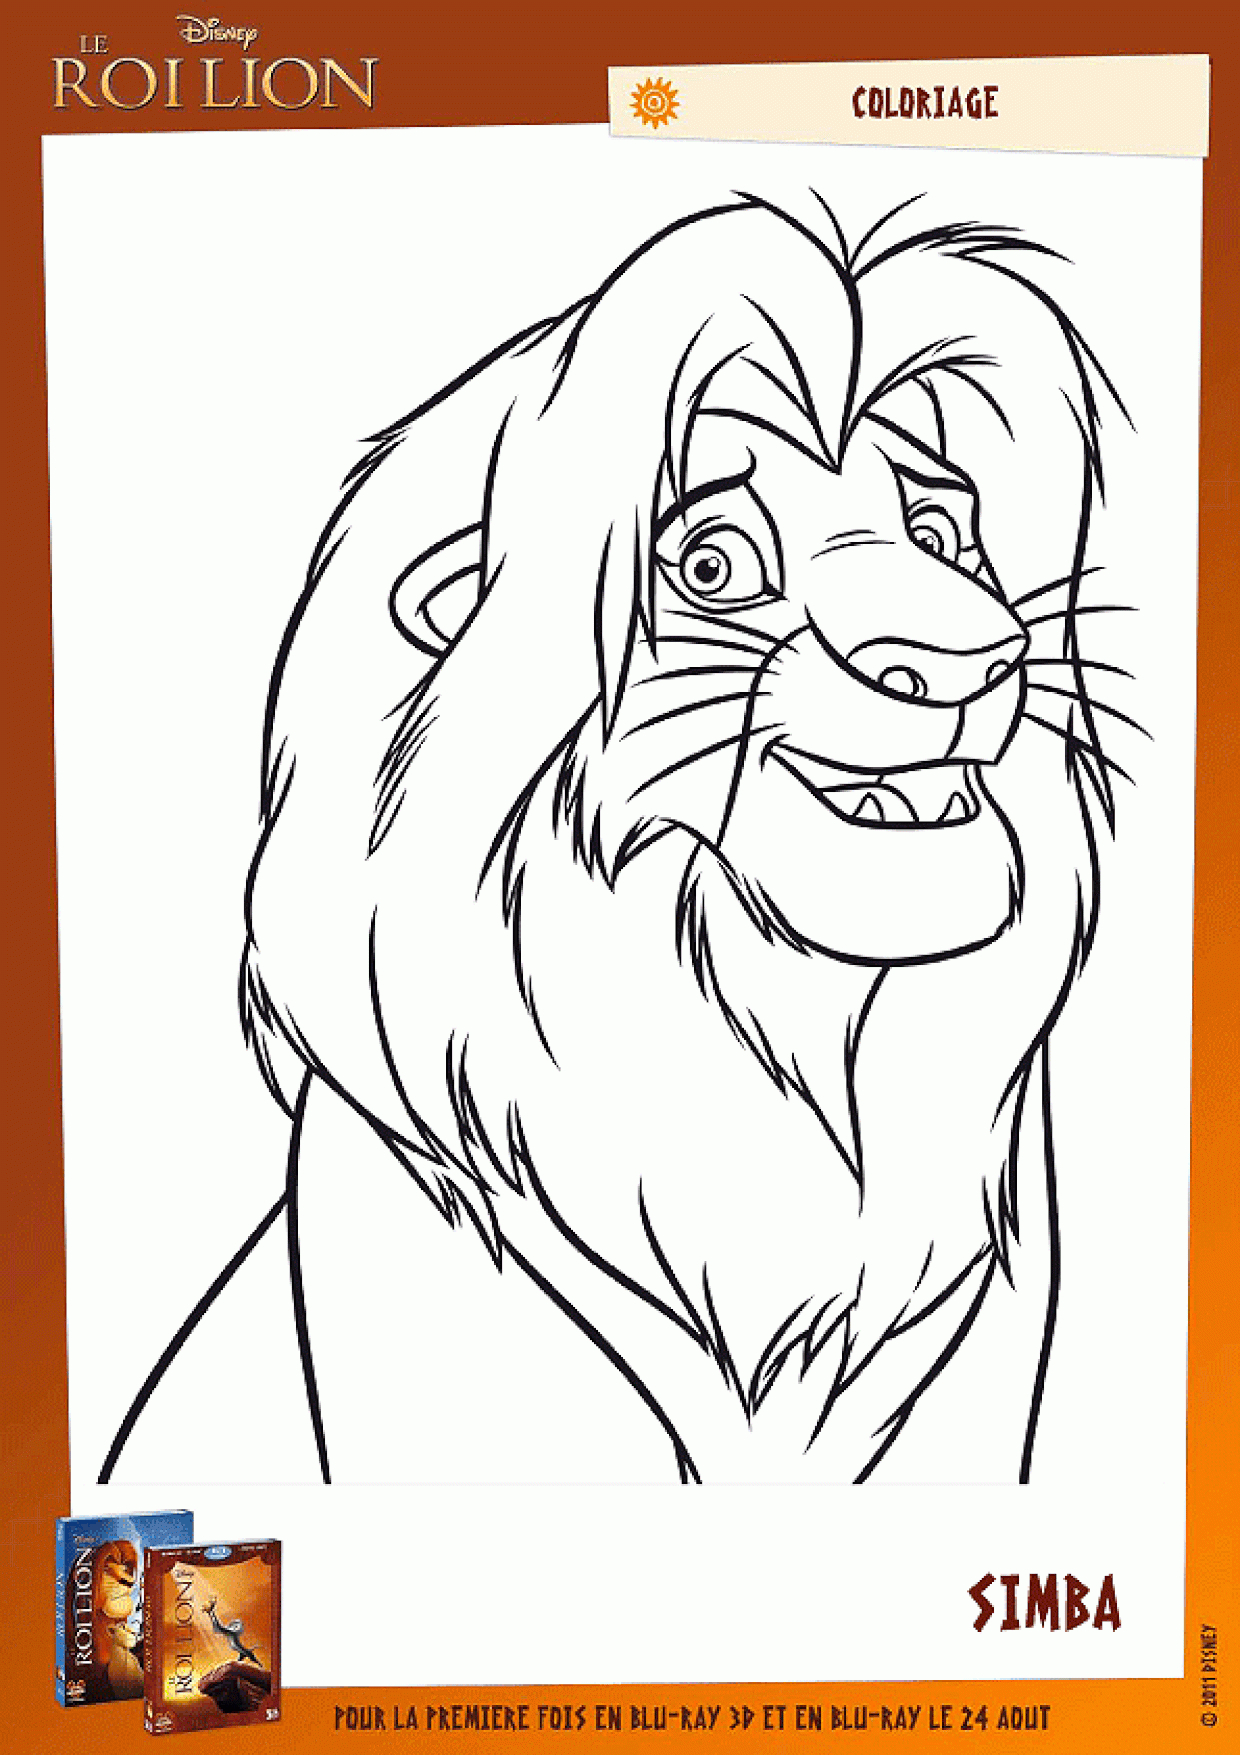 Coloriage Simba Le Nouveau Roi De La Jungle dedans Photo De Lion A Imprimer En Couleur 